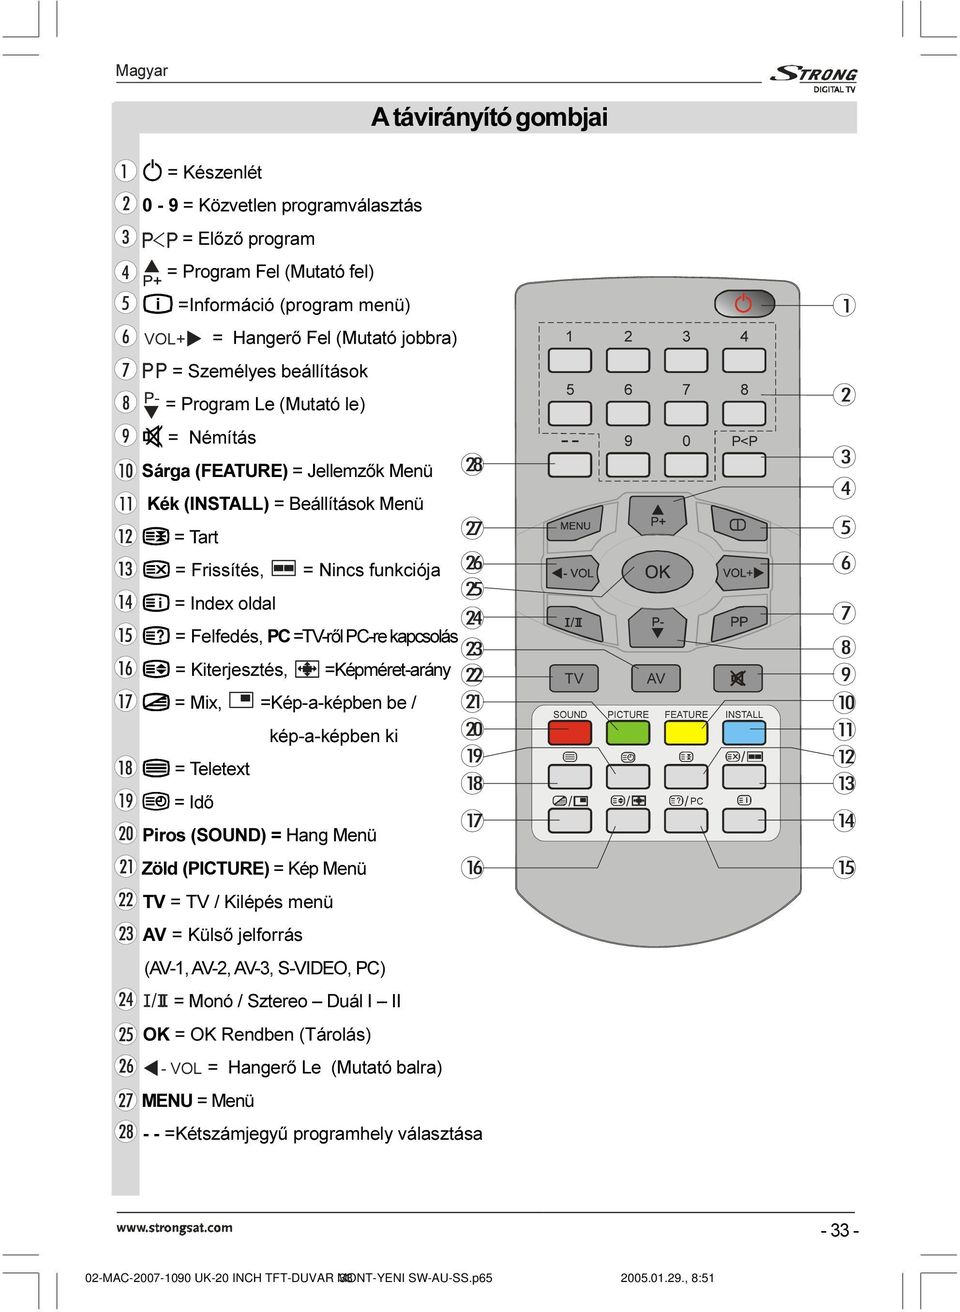 Kiterjesztés, =Képméret-arány = Mix, =Kép-a-képben be / kép-a-képben ki = Teletext = Idõ Piros (SOUND) = Hang Menü Zöld (PICTURE) = Kép Menü TV = TV / Kilépés menü AV = Külsõ jelforrás (AV-1, AV-2,